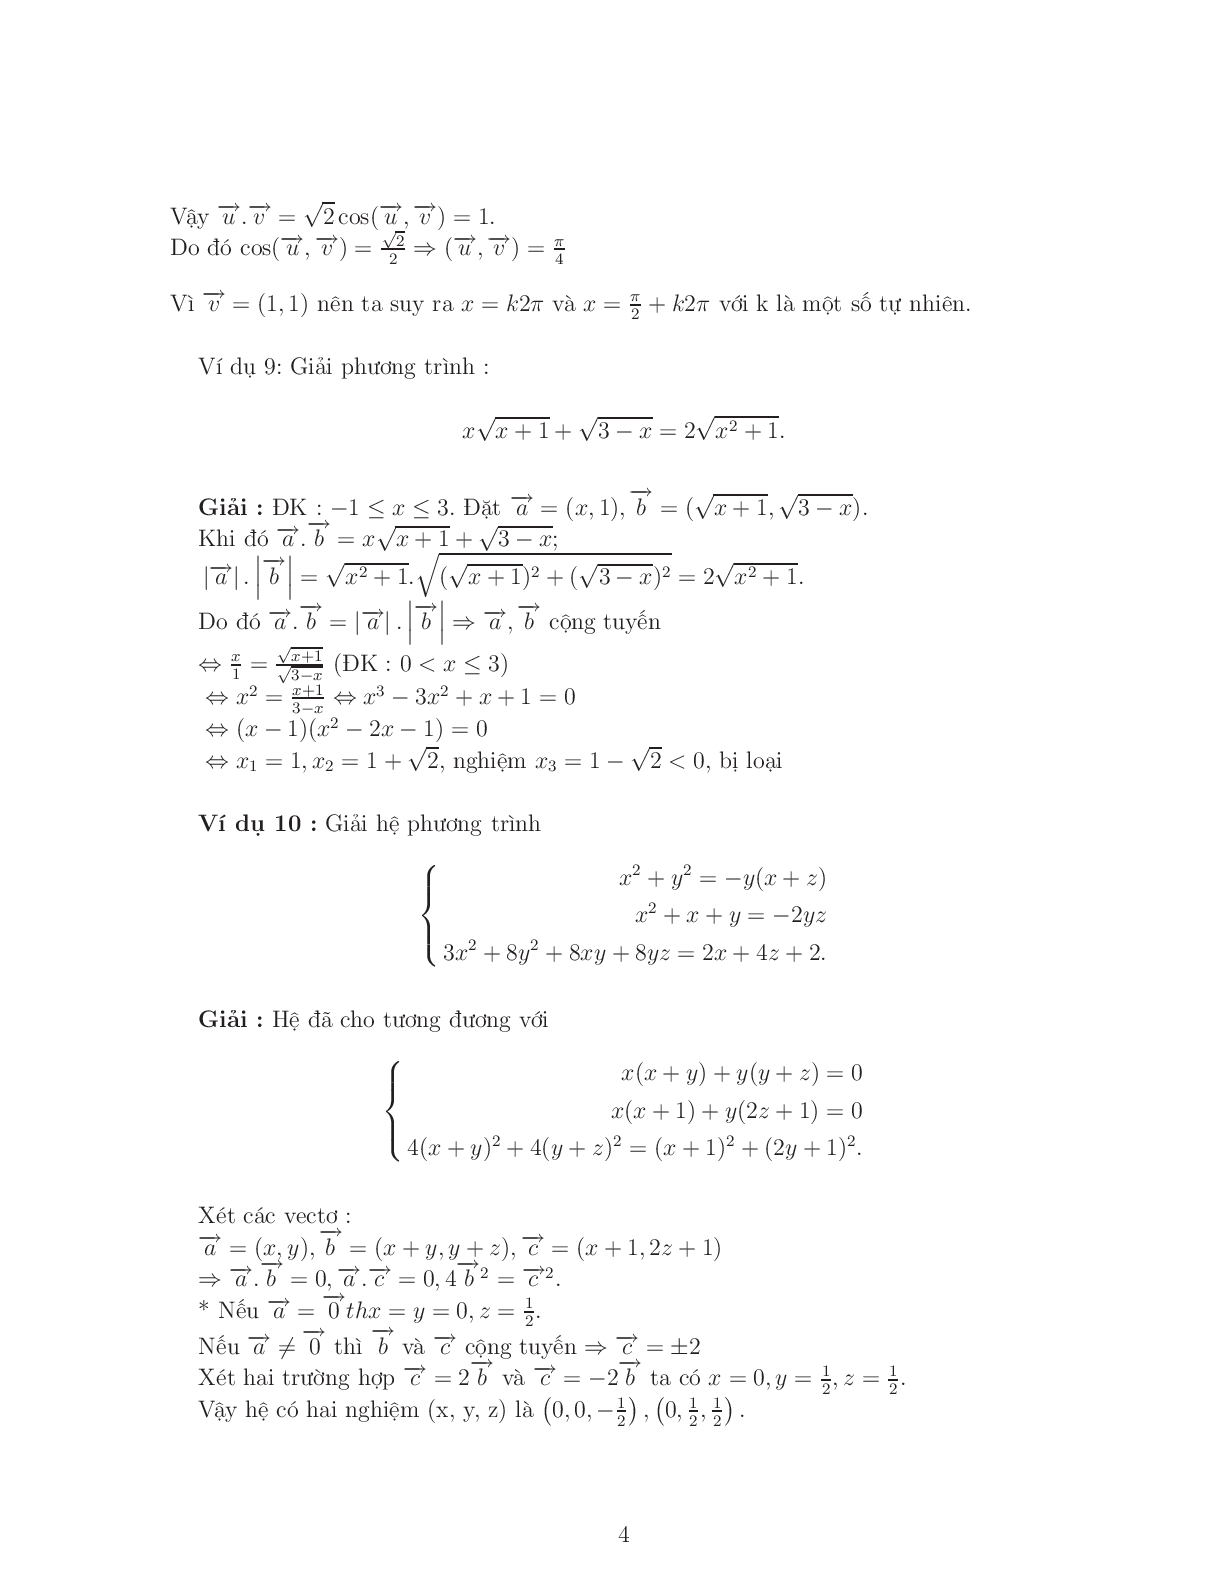 Giải phương trình – bất phương trình bằng phương pháp Vector (trang 4)